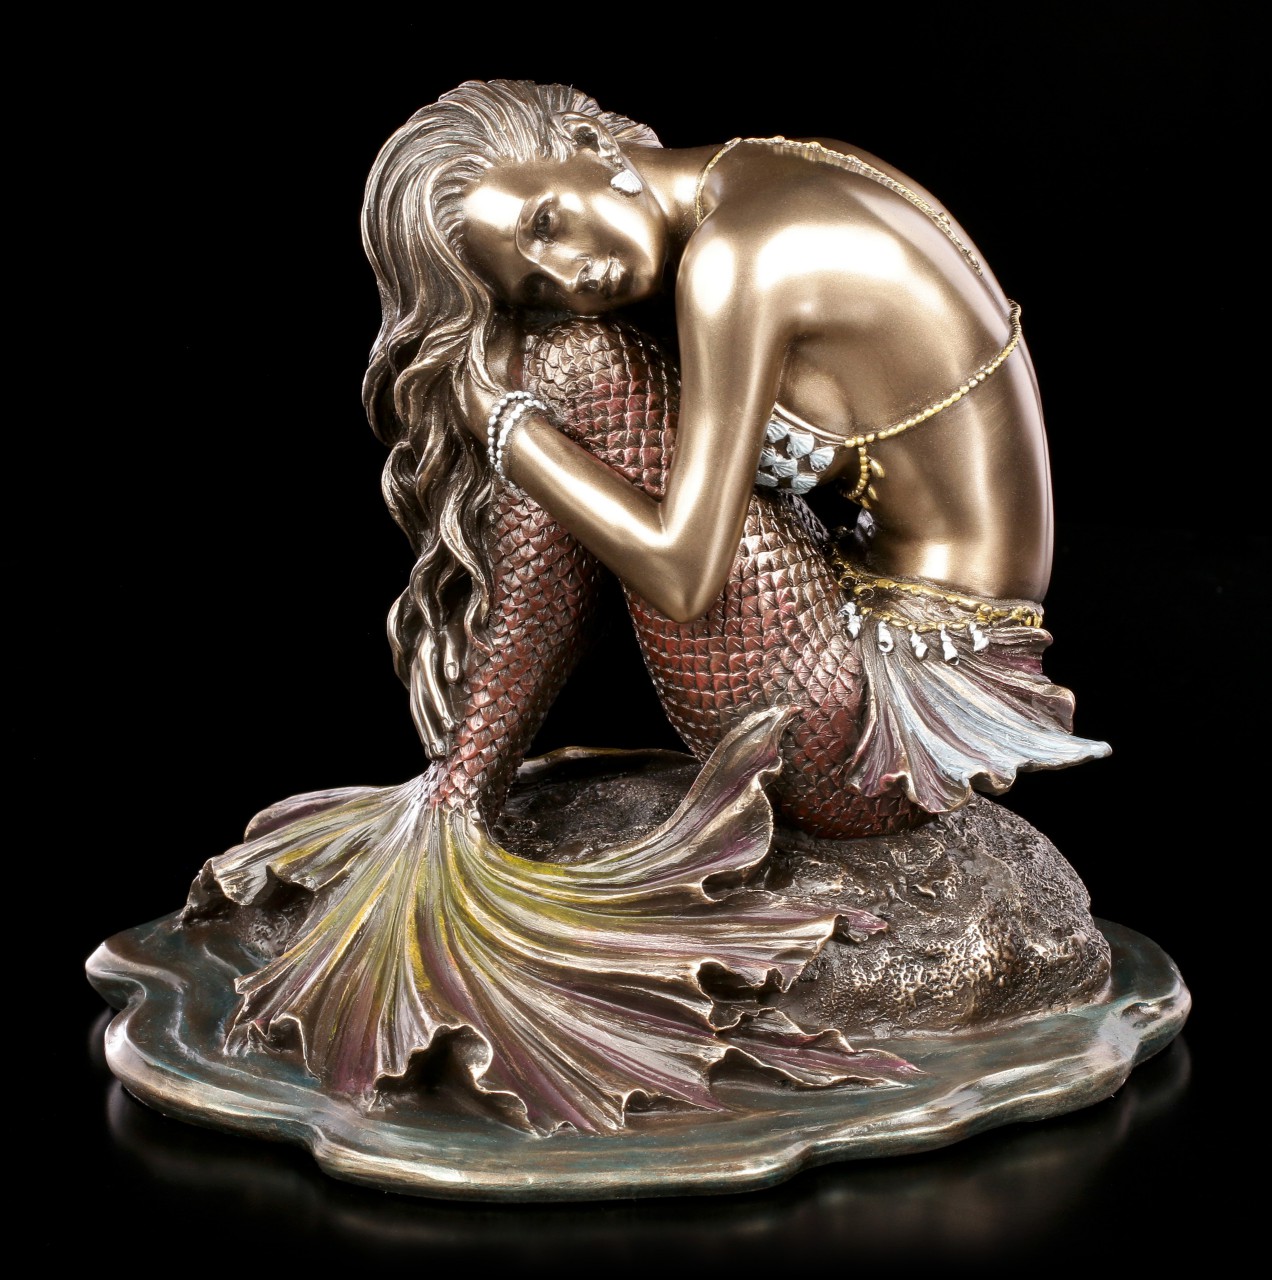 Meerjungfrau Figur sitzt auf Stein